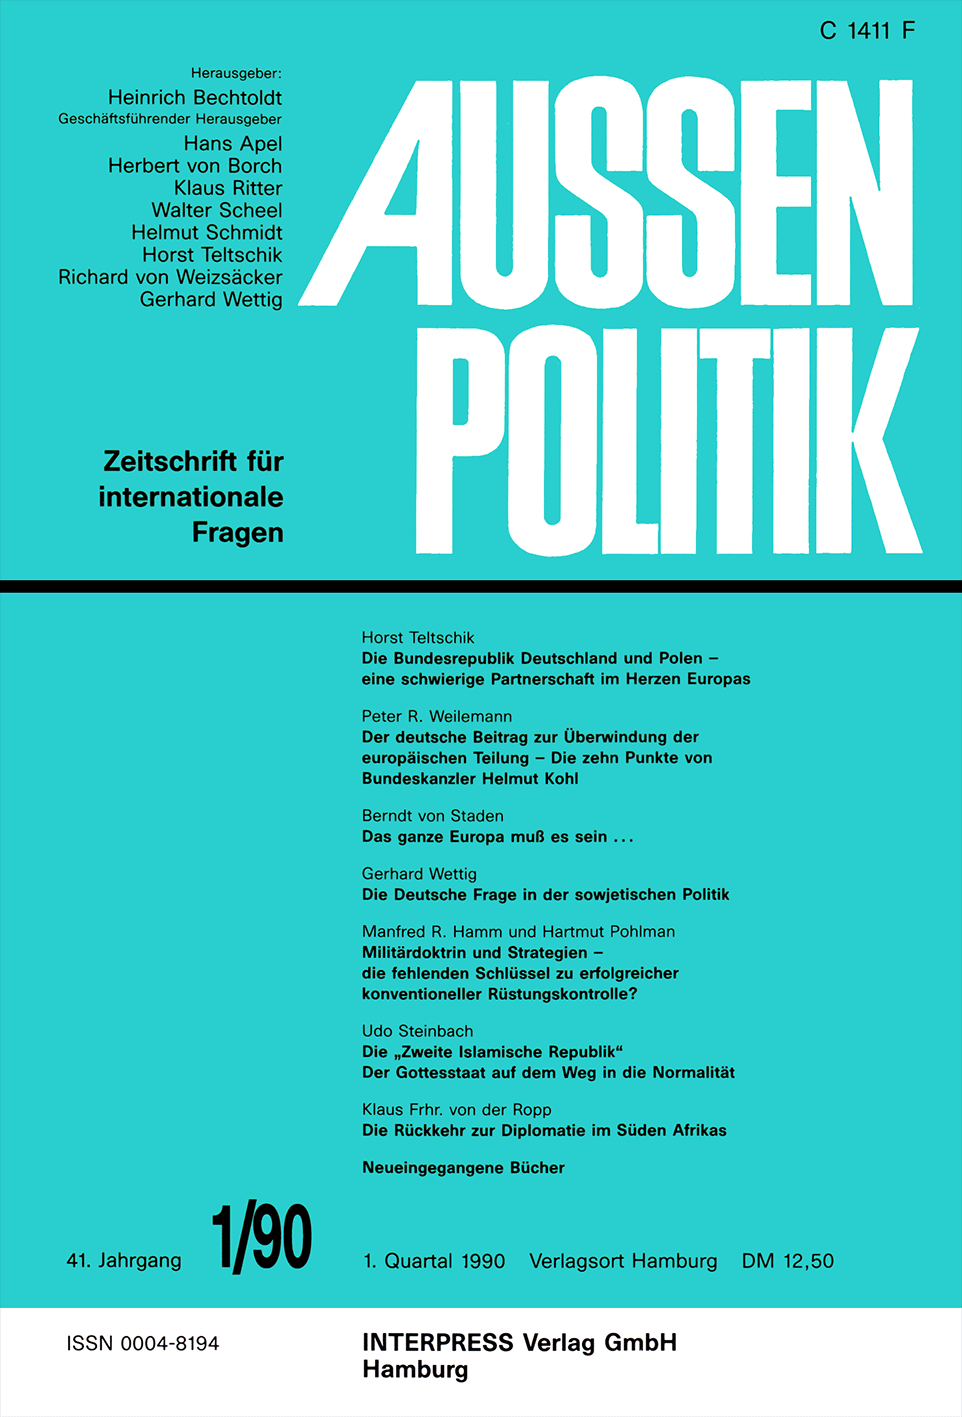 Aussenpolitik, issue 1/90, vol. 41, no. 1, 1990, p. 91-102;